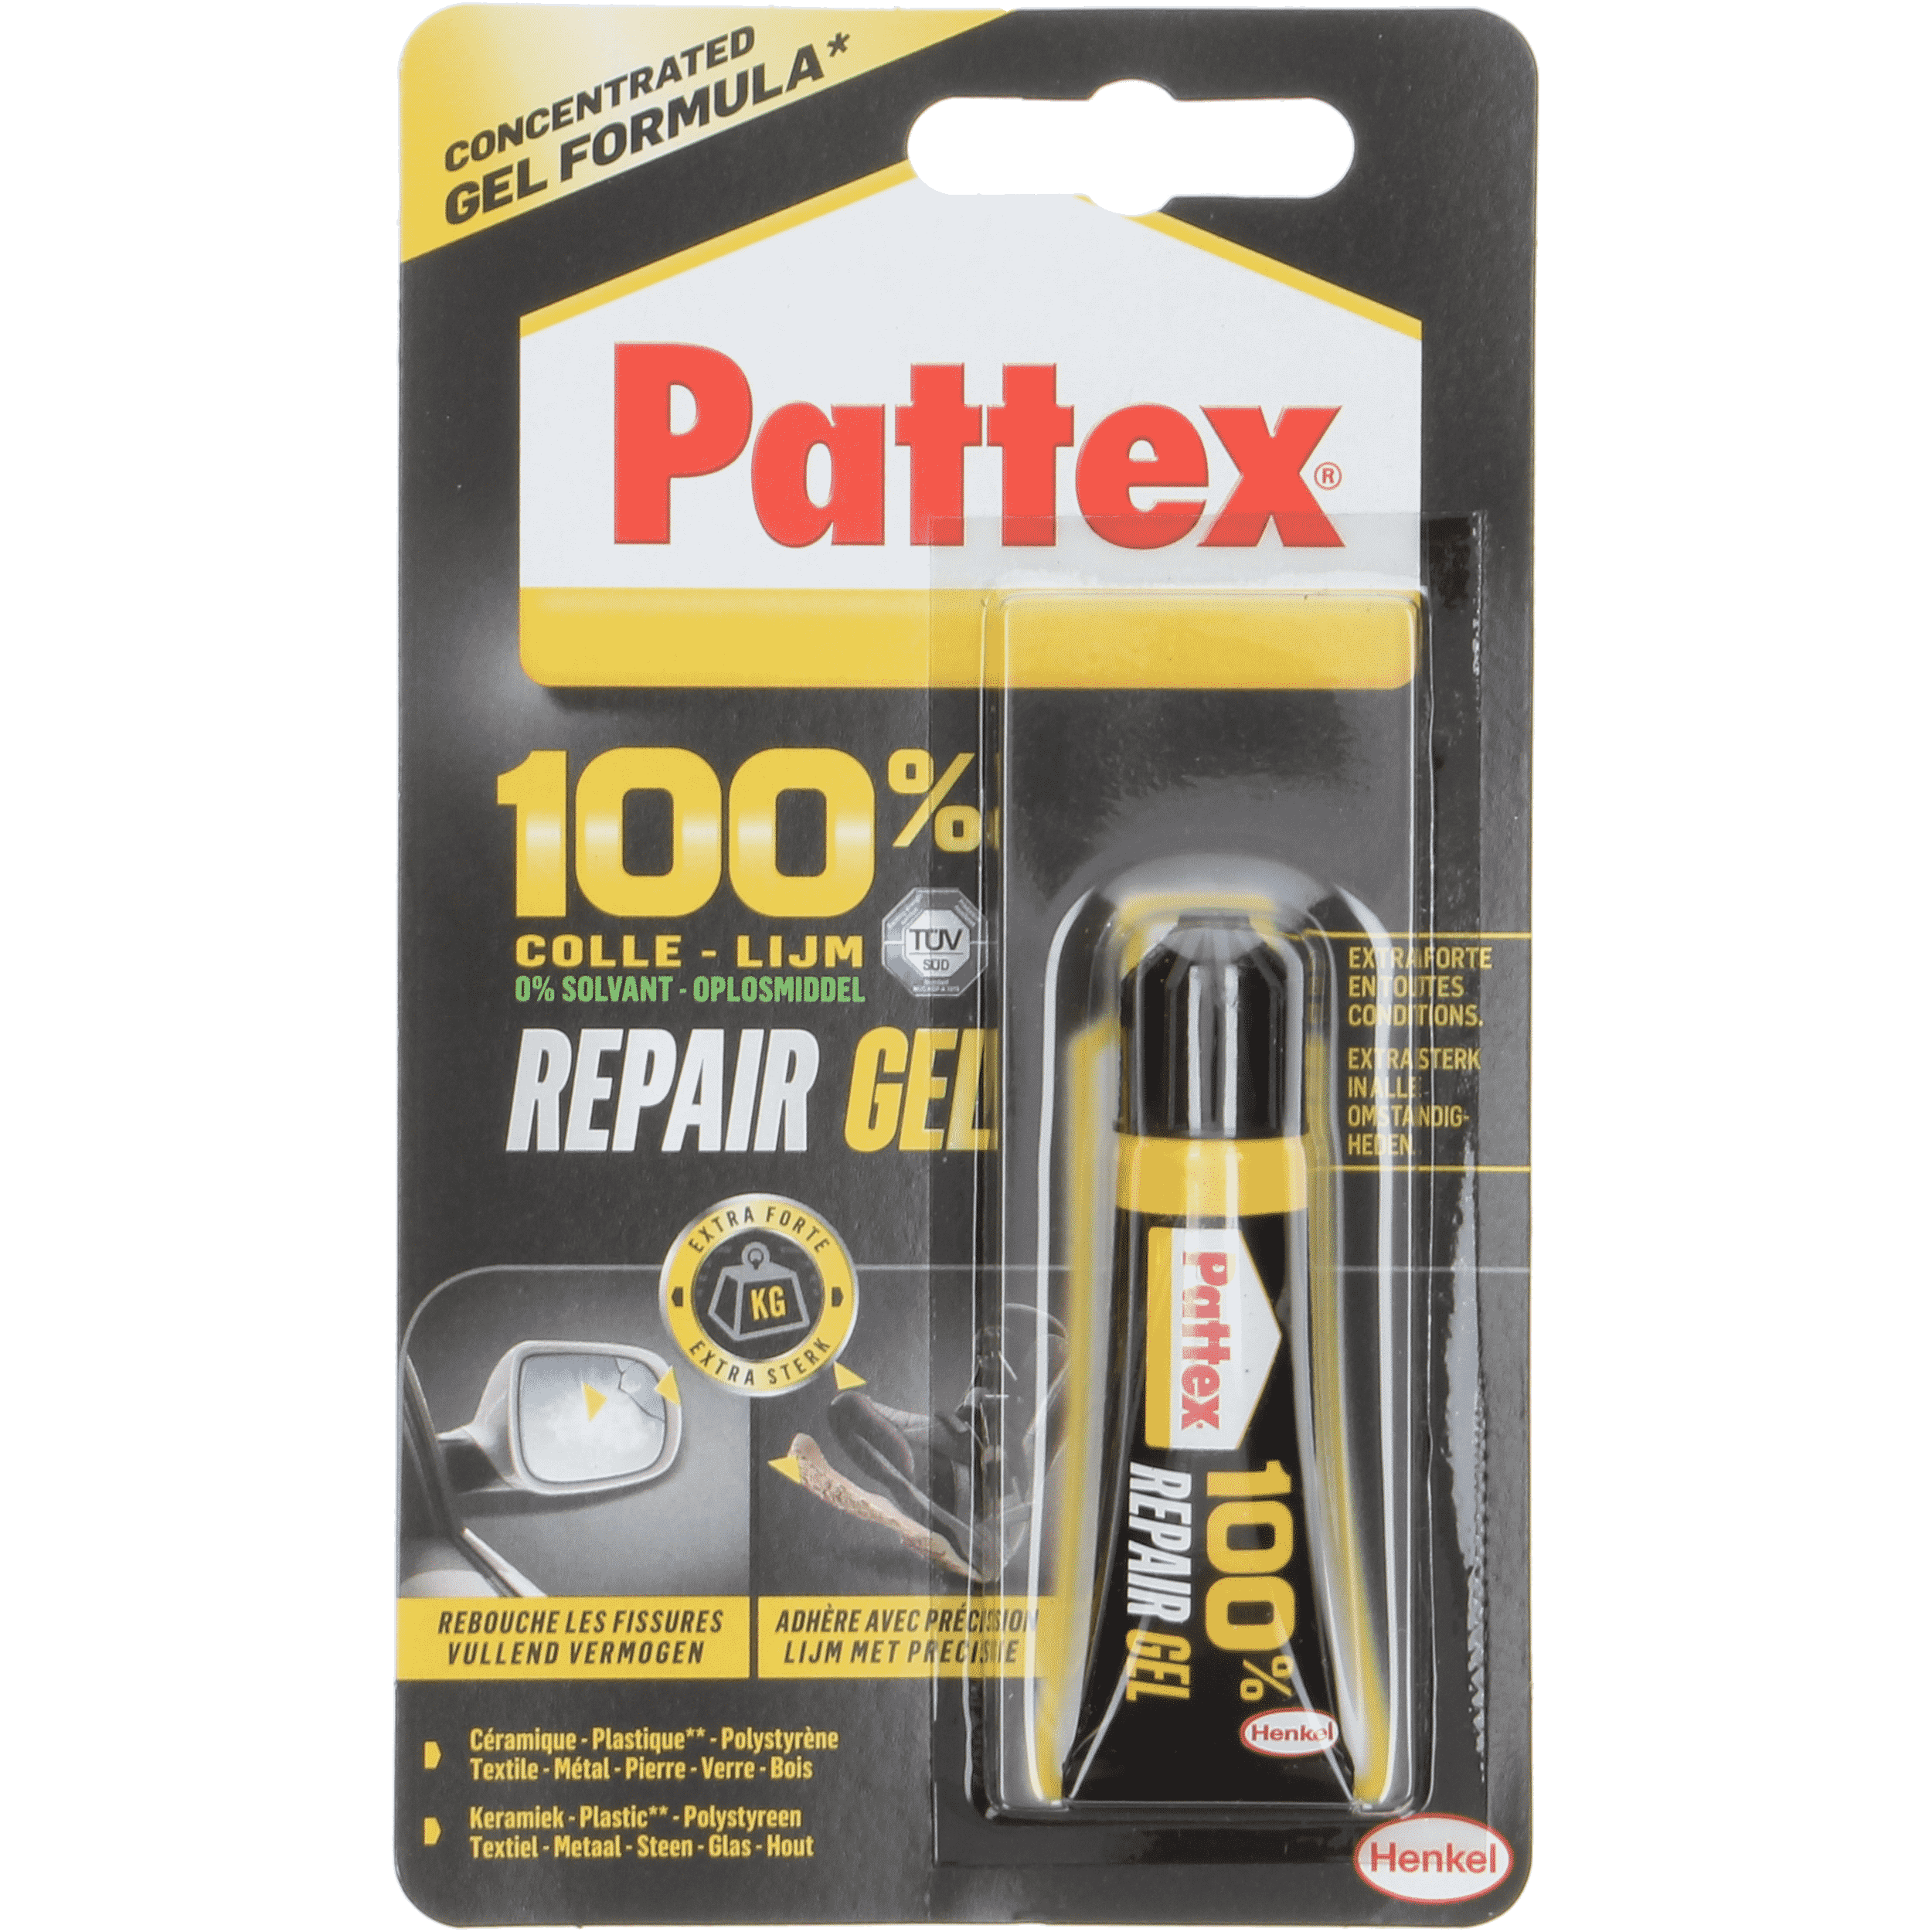 Temmen hypotheek staan Pattex 100% Repair Gel. Voor alle kleine reparaties in en om het huis! |  Dayes Retailer Portal